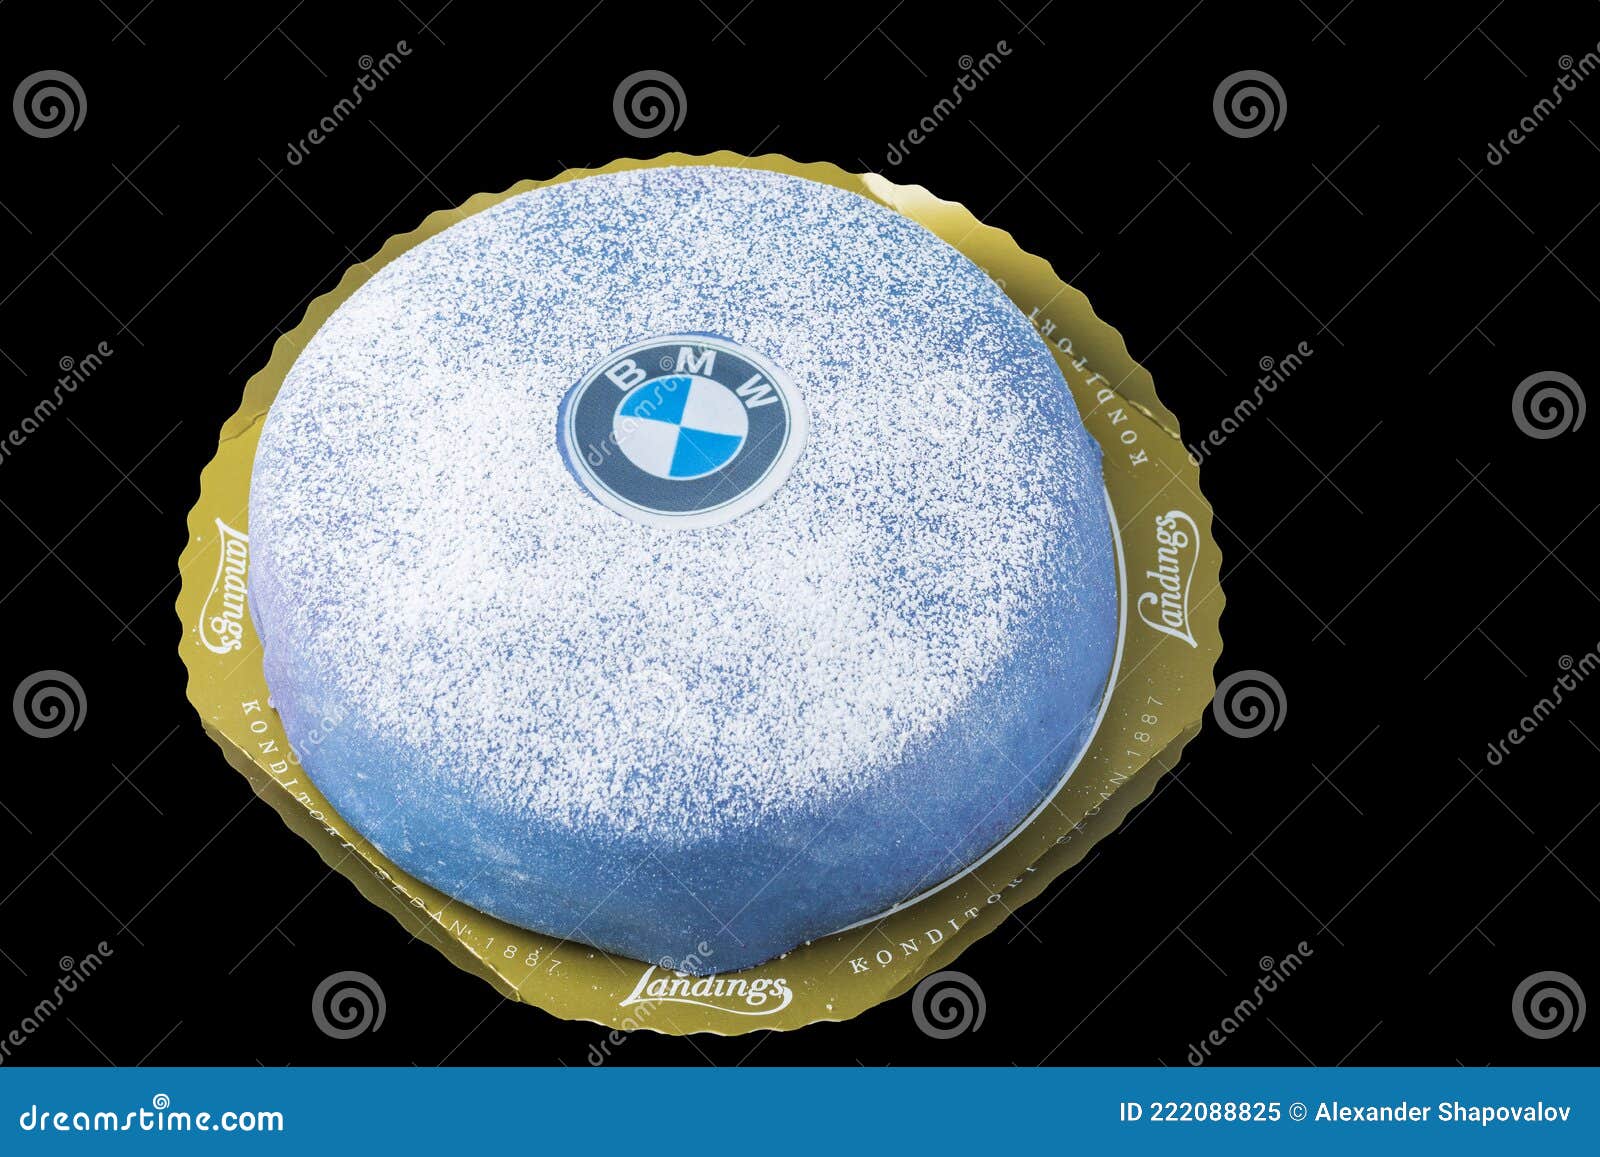 BMW, Logo, Schwarzer Hintergrund